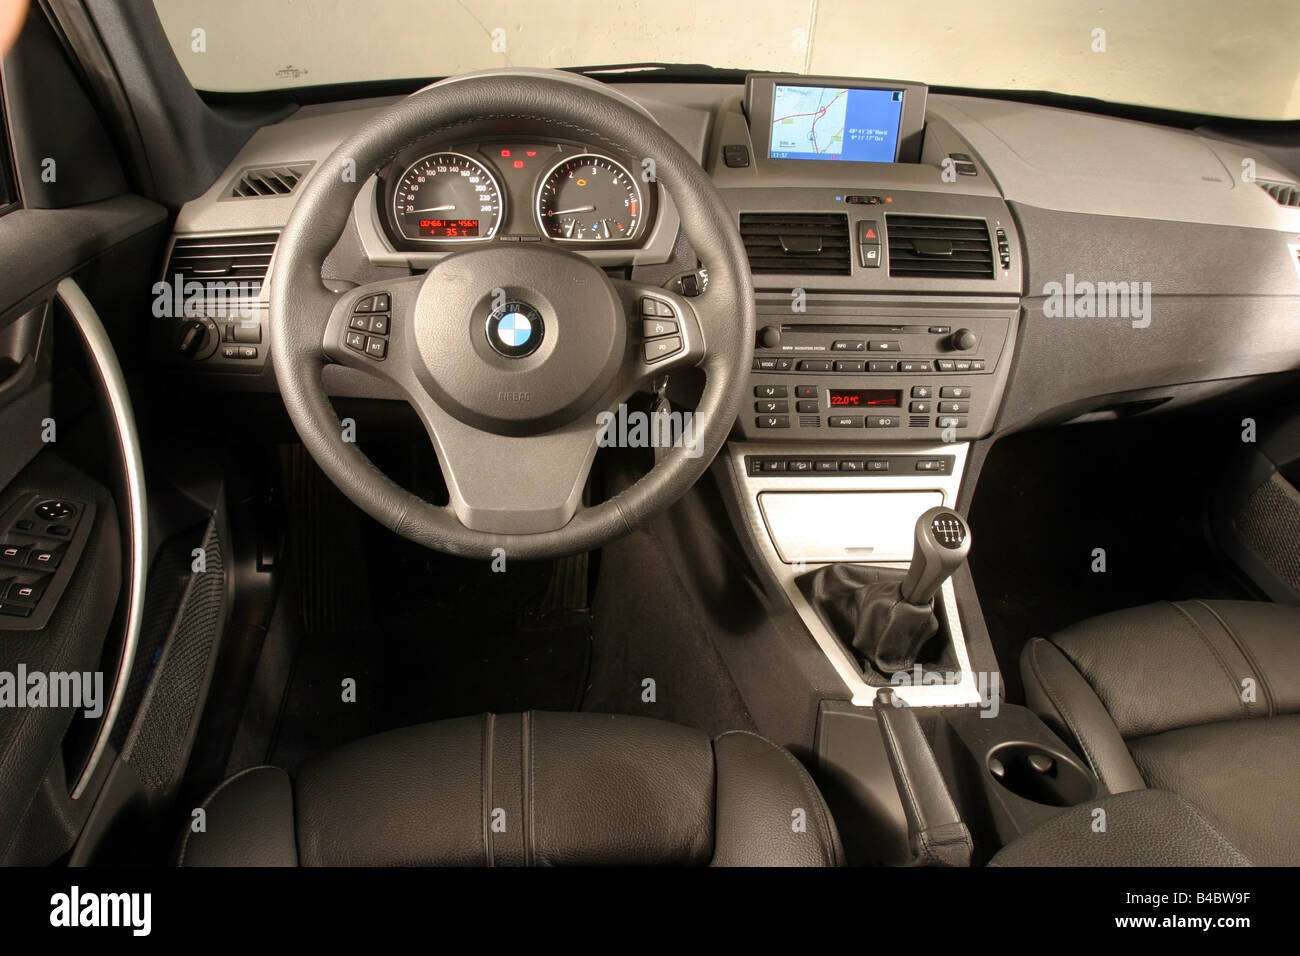 Auto, BMW X3 3,0 d, Langlauf-Fahrzeug, Bj. 2003-blau, innere